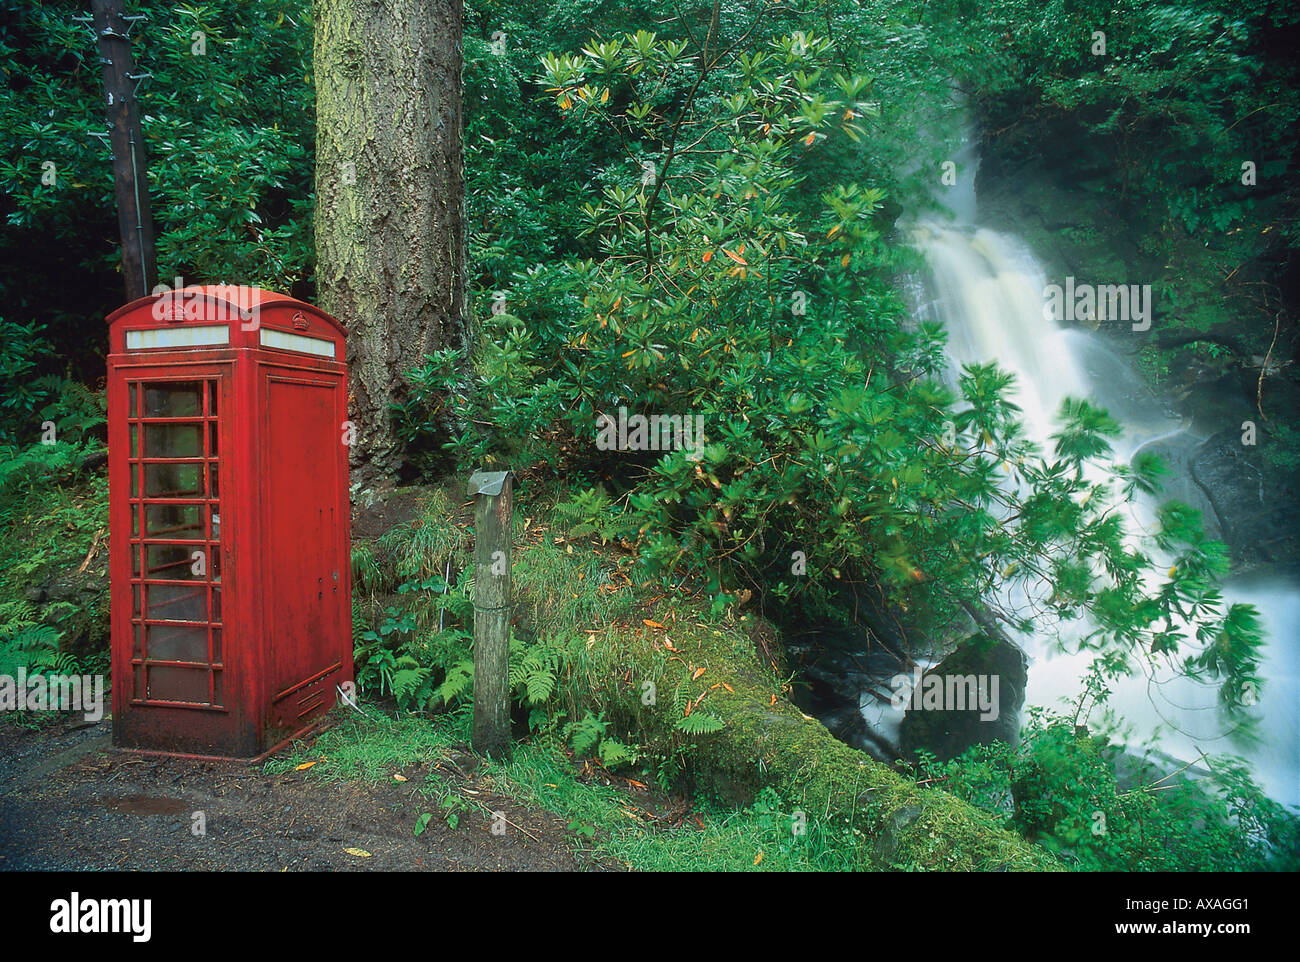 Telefonzelle im Wald, Carsaig, Mull, Grossbritannien Schottland Banque D'Images